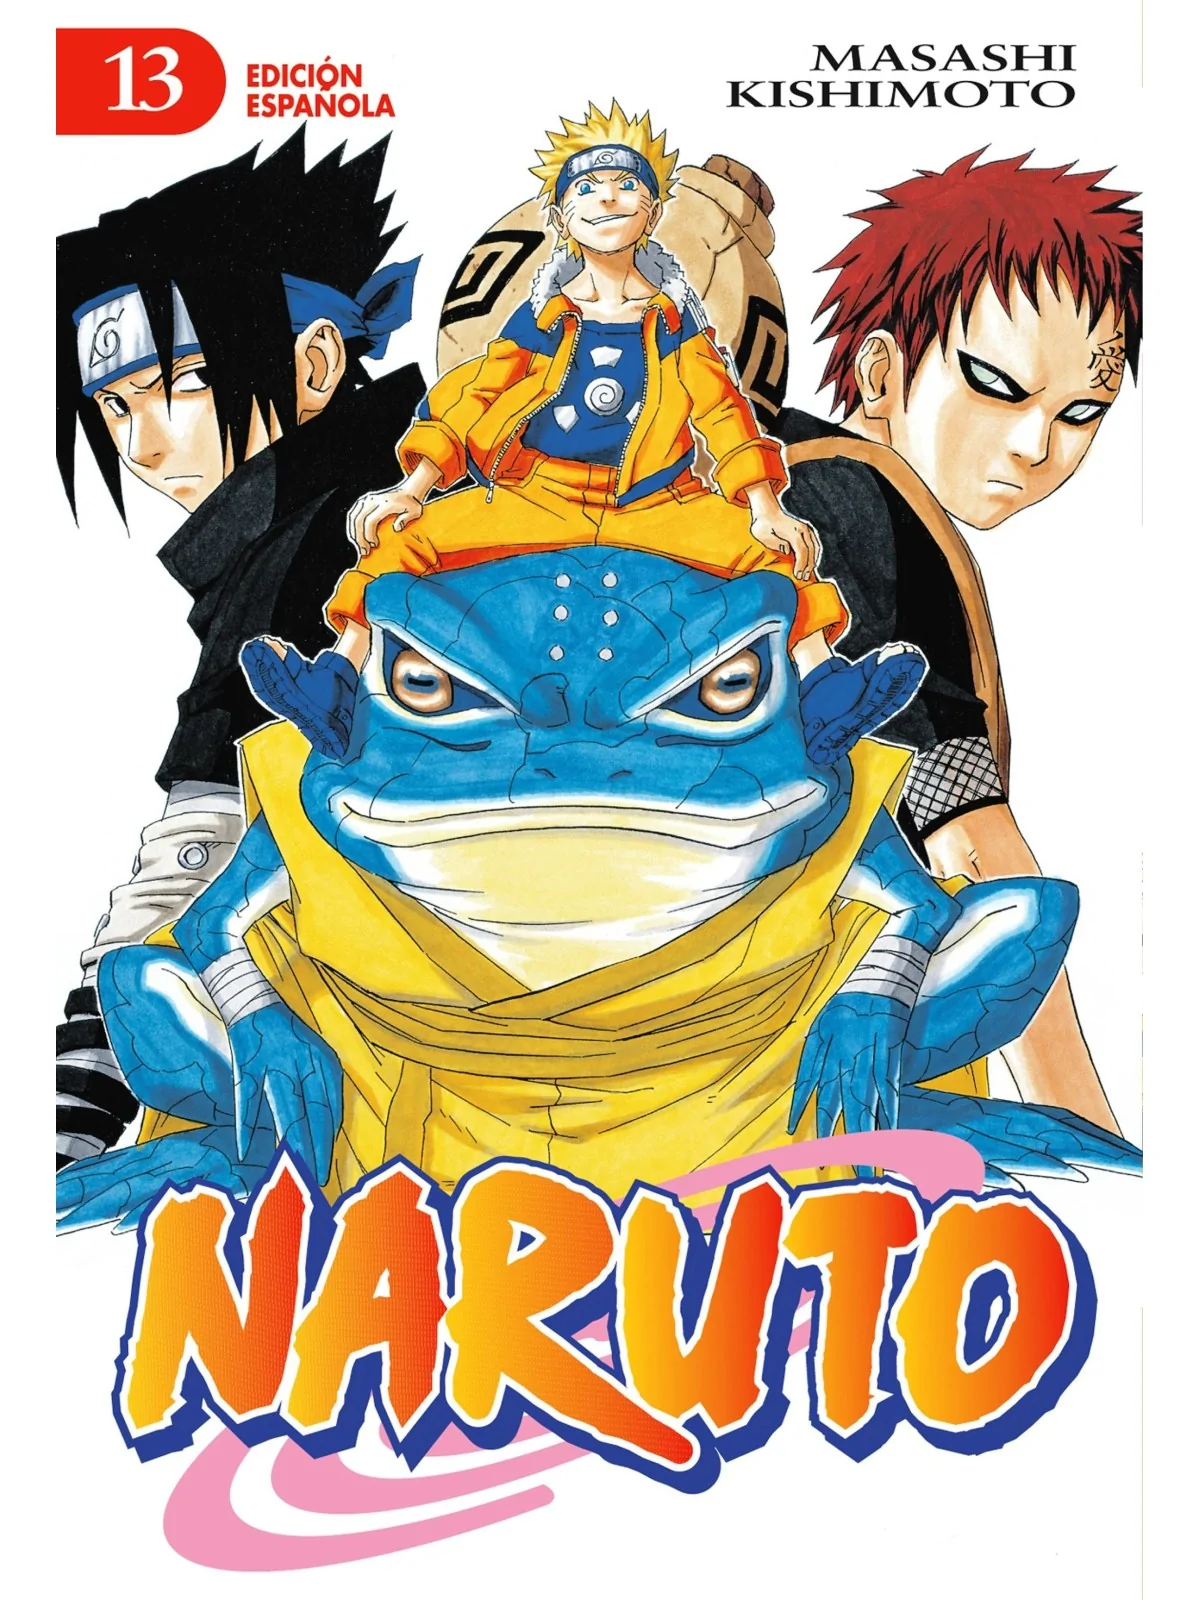 Comprar Naruto 13 barato al mejor precio 7,12 € de Planeta Comic